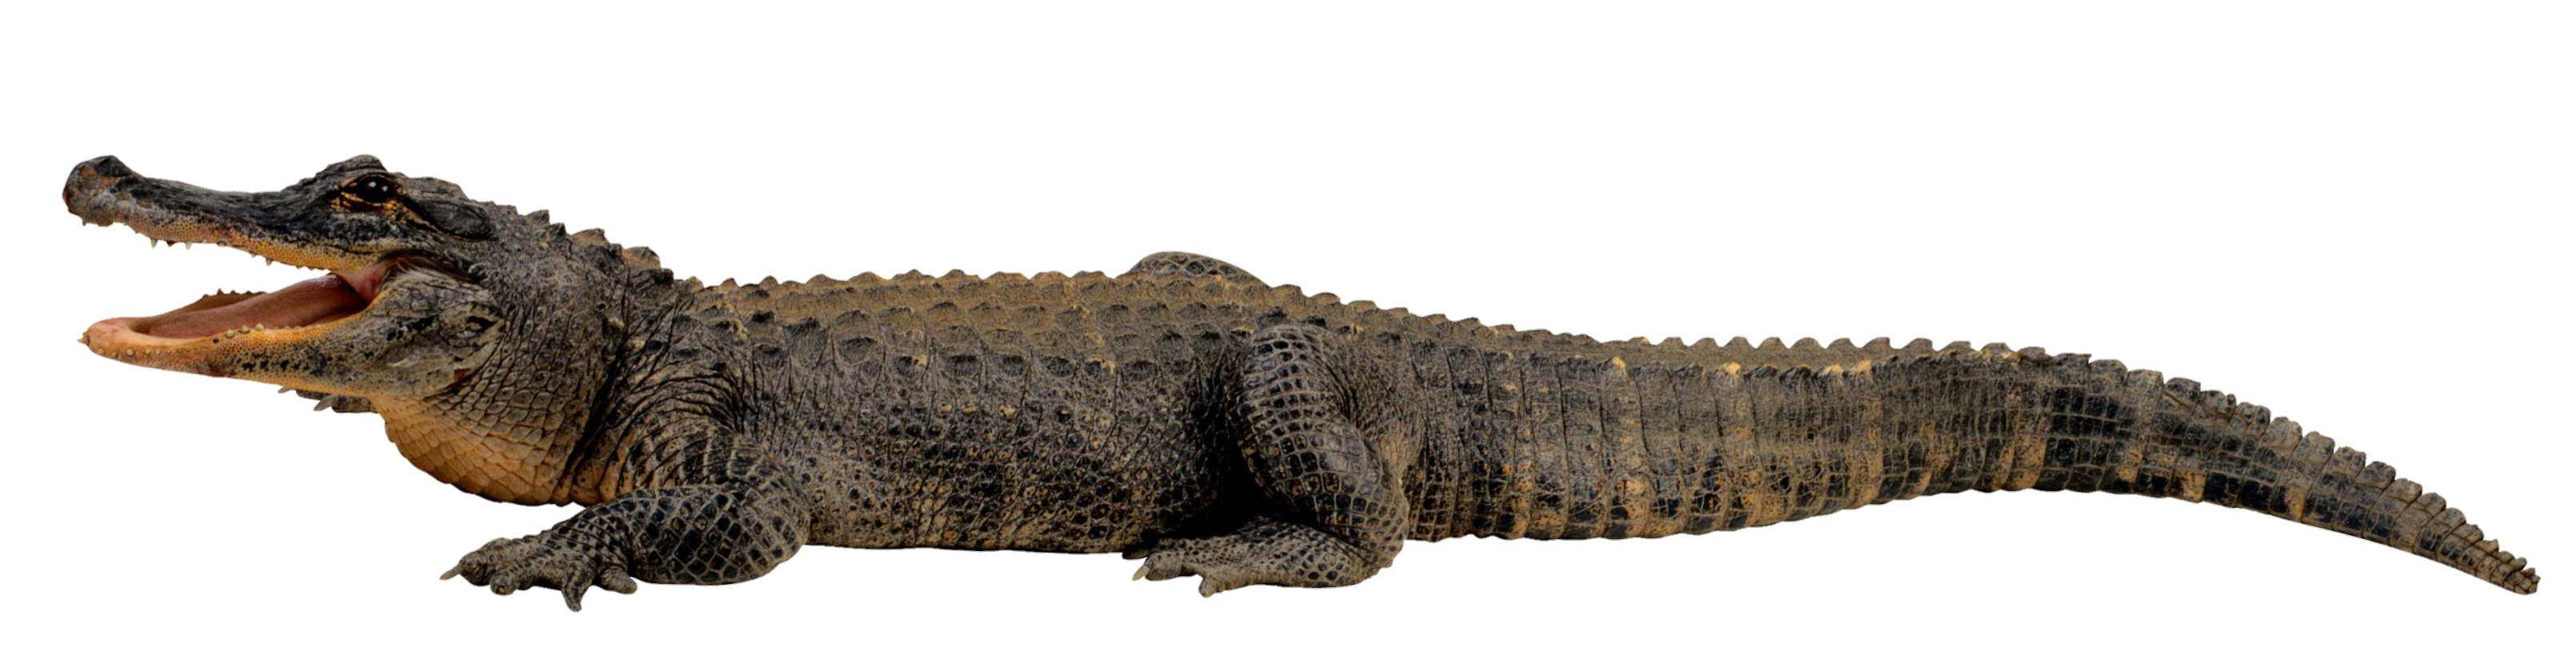 Crocodile-9